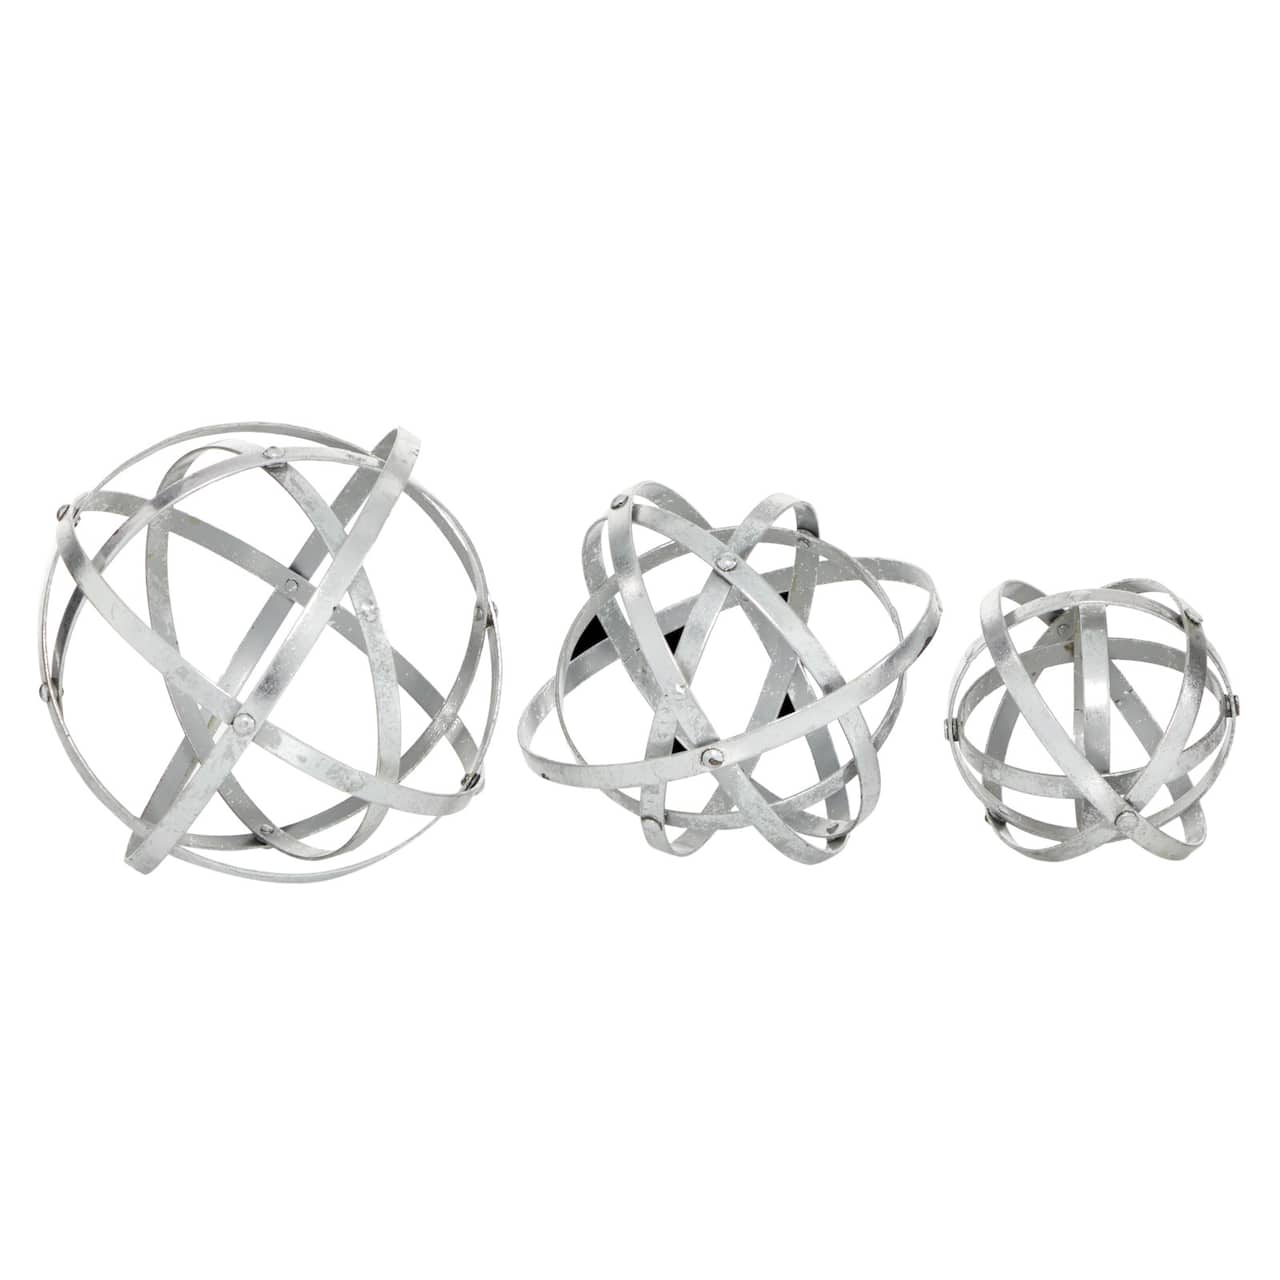 Silver Metal Modern Orbs Balls Sculpture Set